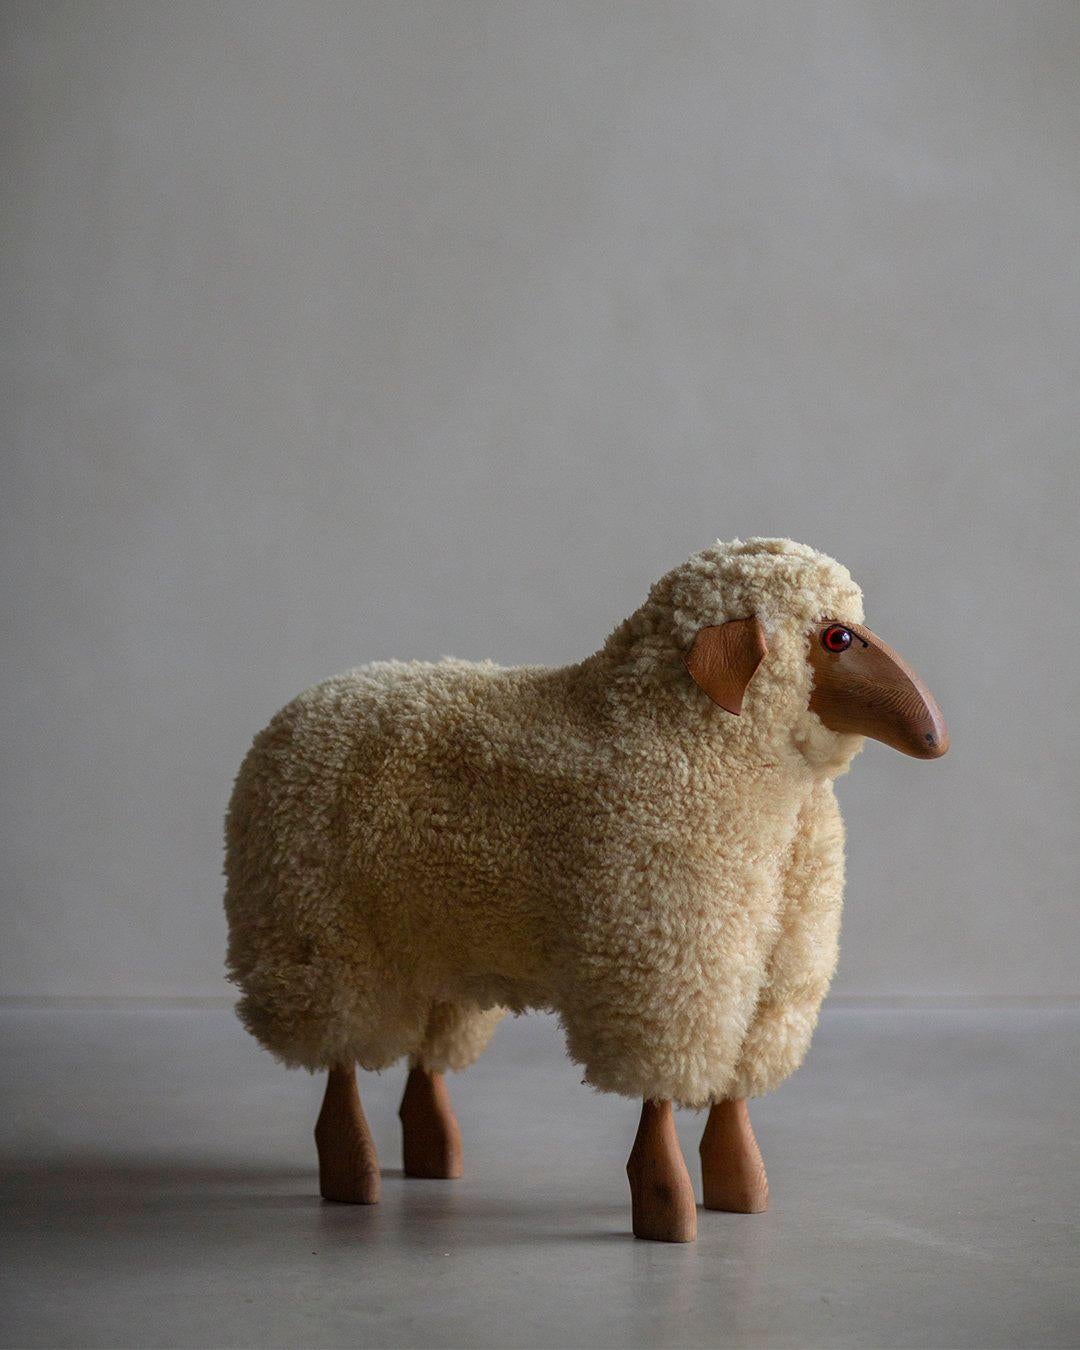 La sculpture de mouton en laine de Hanne-Peter Krafft, une première édition au charme vintage, a été réalisée pour la société allemande Meier. Fabriquée à la main, cette sculpture présente un caractère unique et une grande attention aux